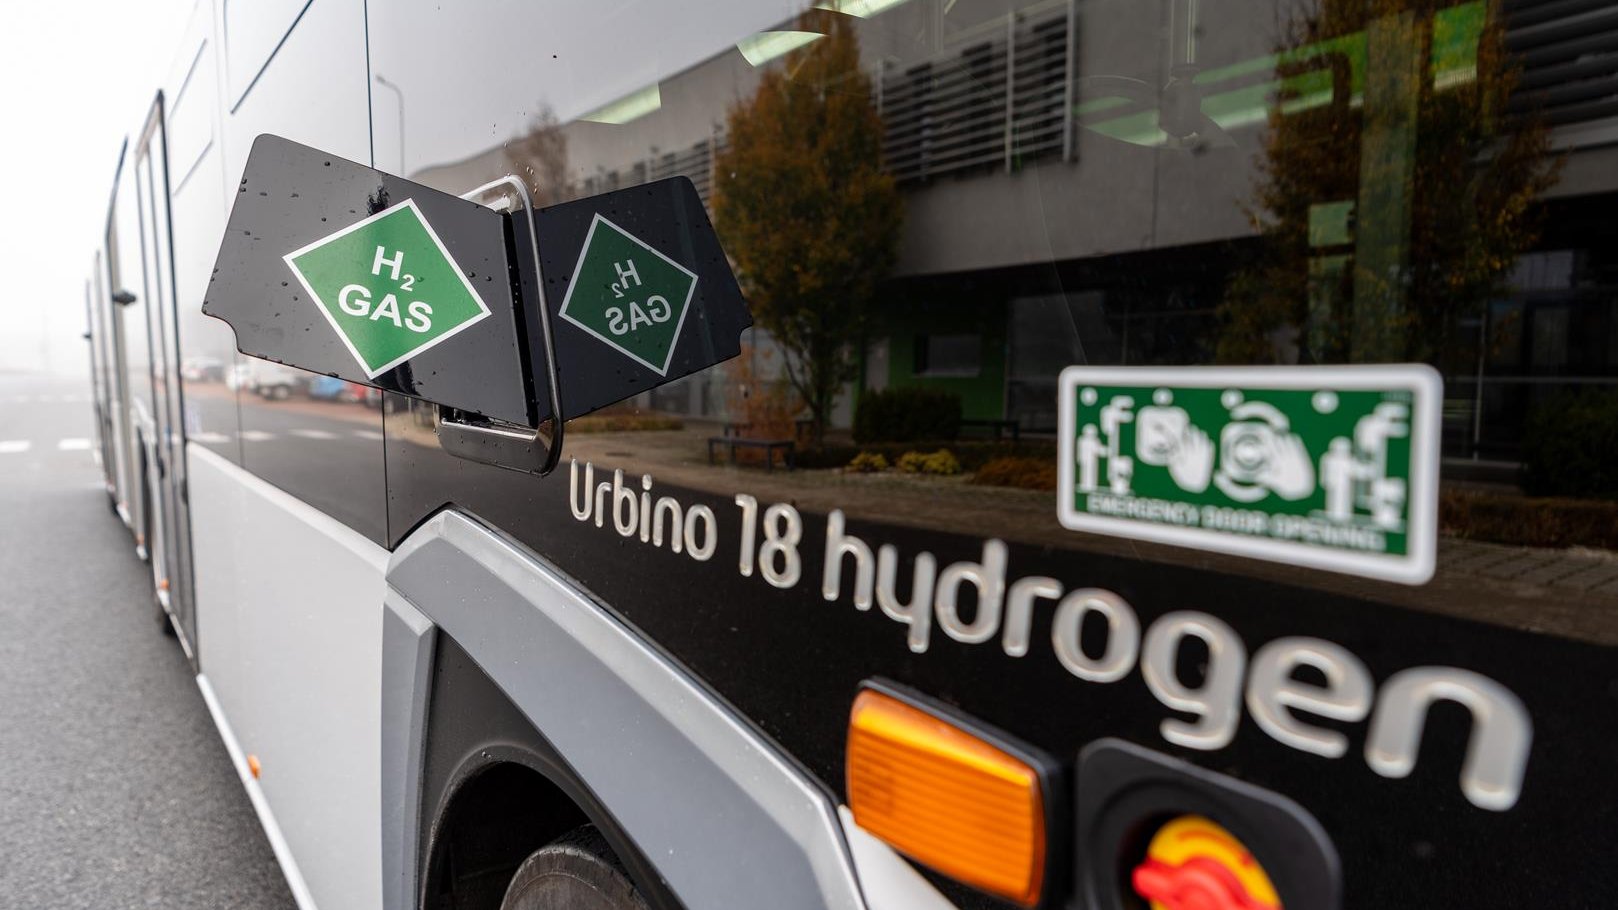 Na zdjęciu autobus wodorowy, widać jego bok i napis: Urbino 18 hydrogen